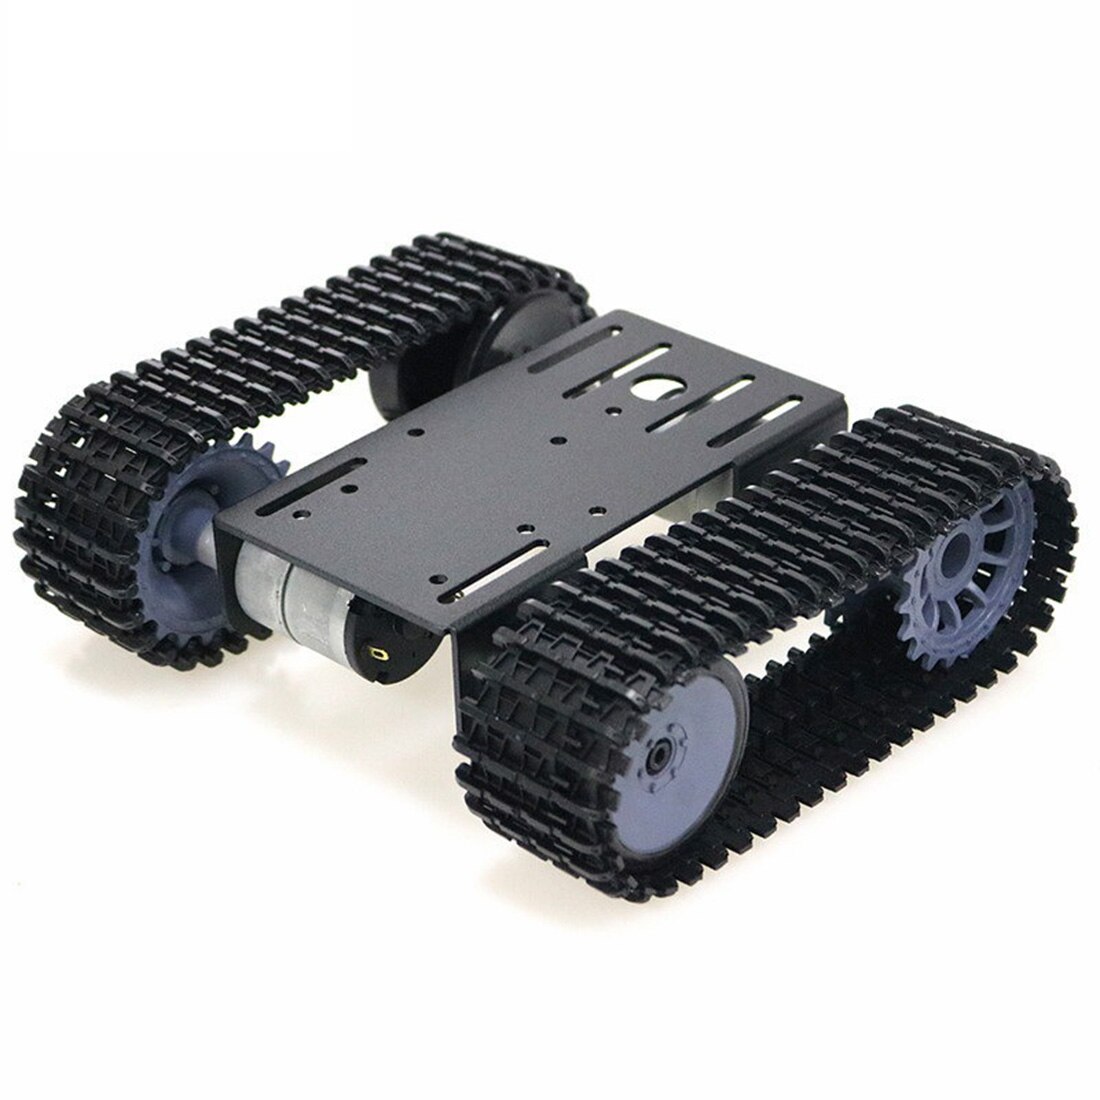 Tp101- sporet robot smart bil platform diy metal robot tank crawler chassis platform kit til arduino - sort / blå / hvid